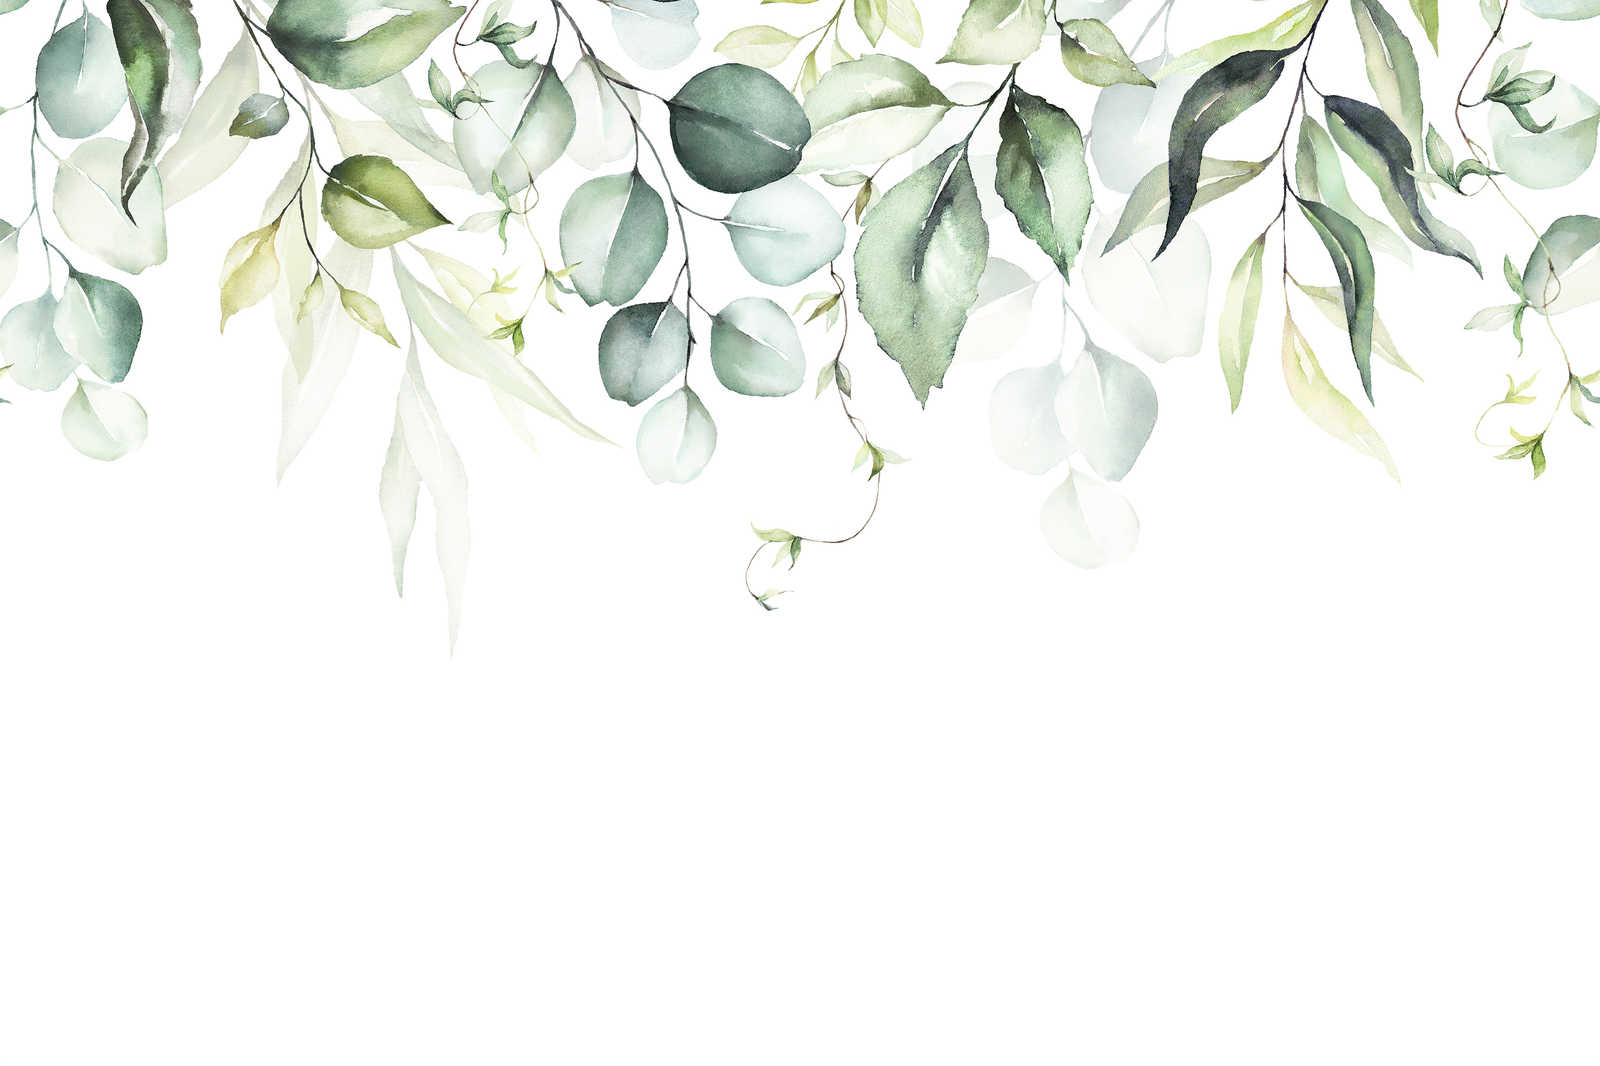             Toile avec rinceaux de feuilles en aquarelle - 0,90 m x 0,60 m
        